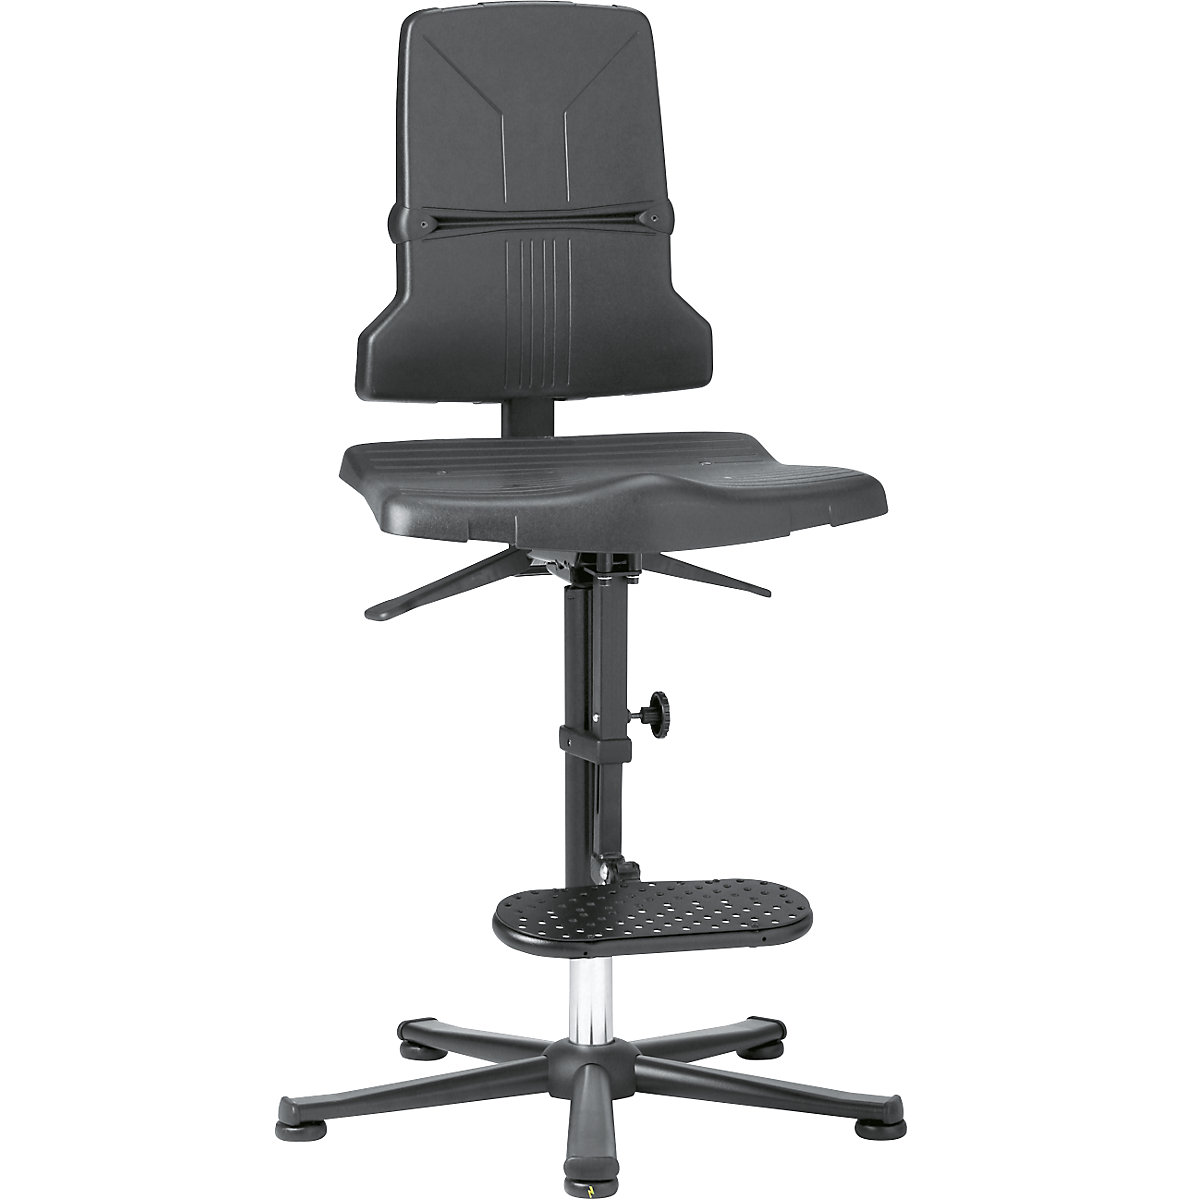 bimos – Pracovná otočná stolička ESD SINTEC, s prestavením sklonu sedadla, s klzákmi a výstupnou pomôckou